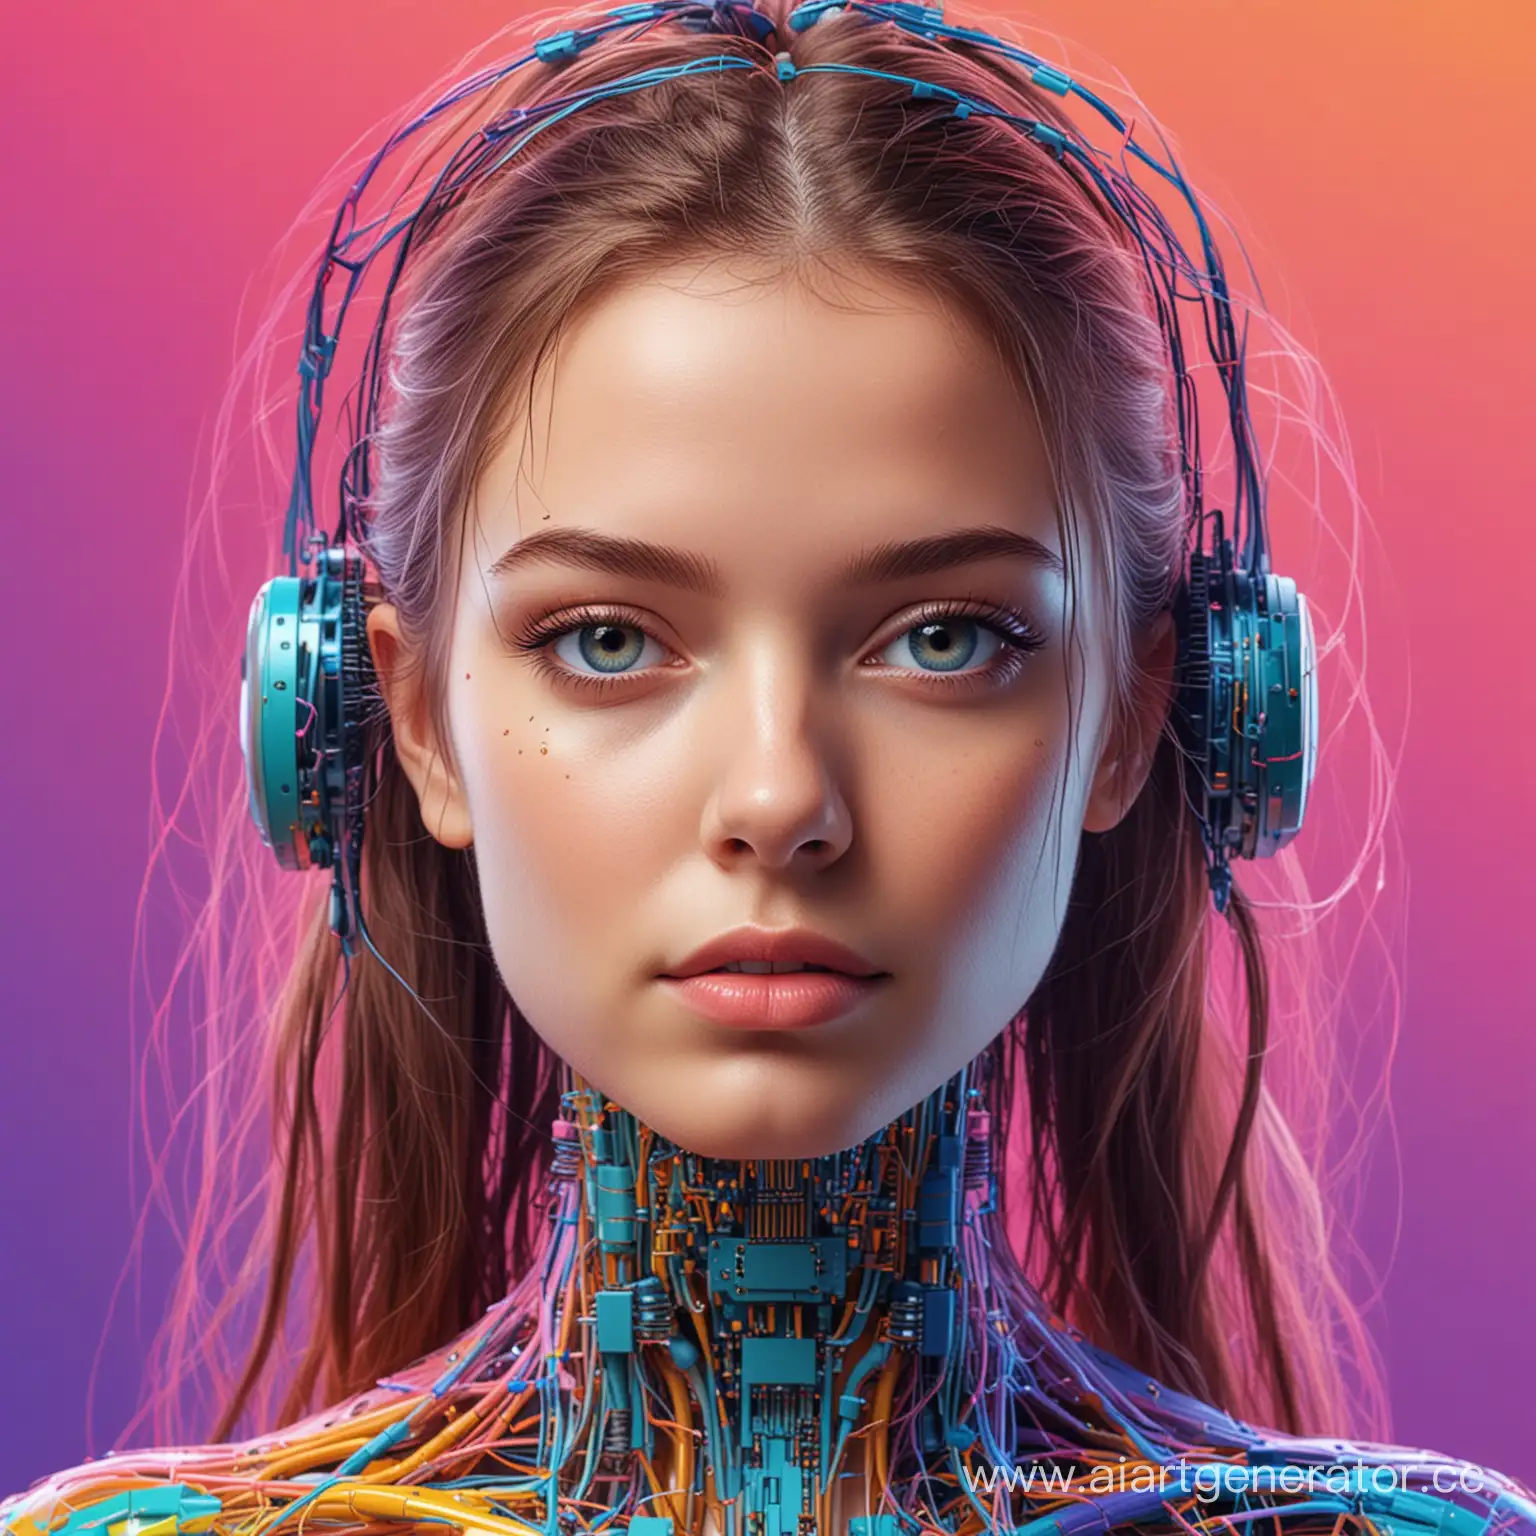 рекламный постер вебинара по нейросетям в ярких цветах, реалистичное изображение девушки и искусственного интеллекта